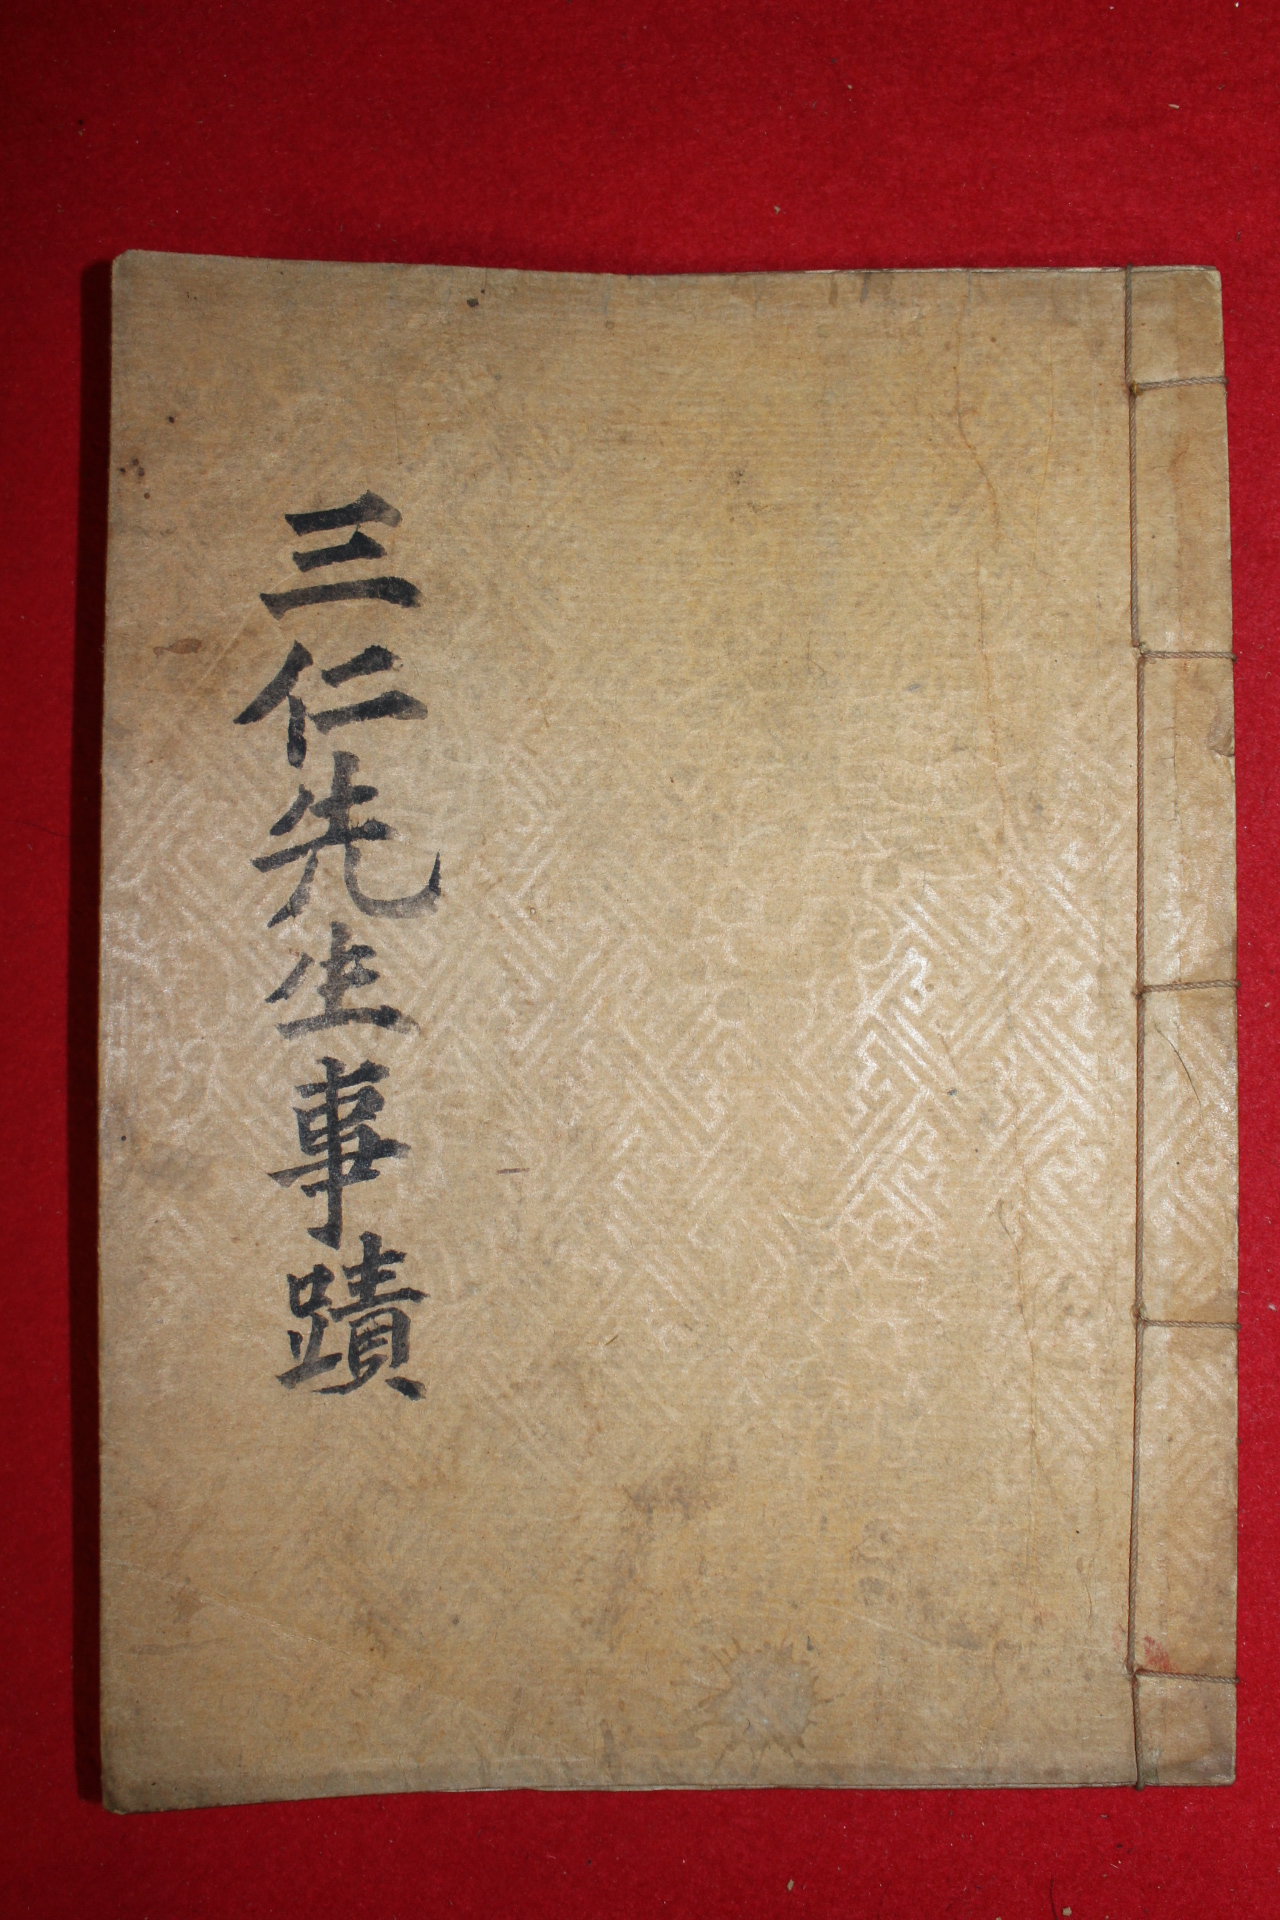 1937년간행 삼인사적(三仁事蹟) 1책완질